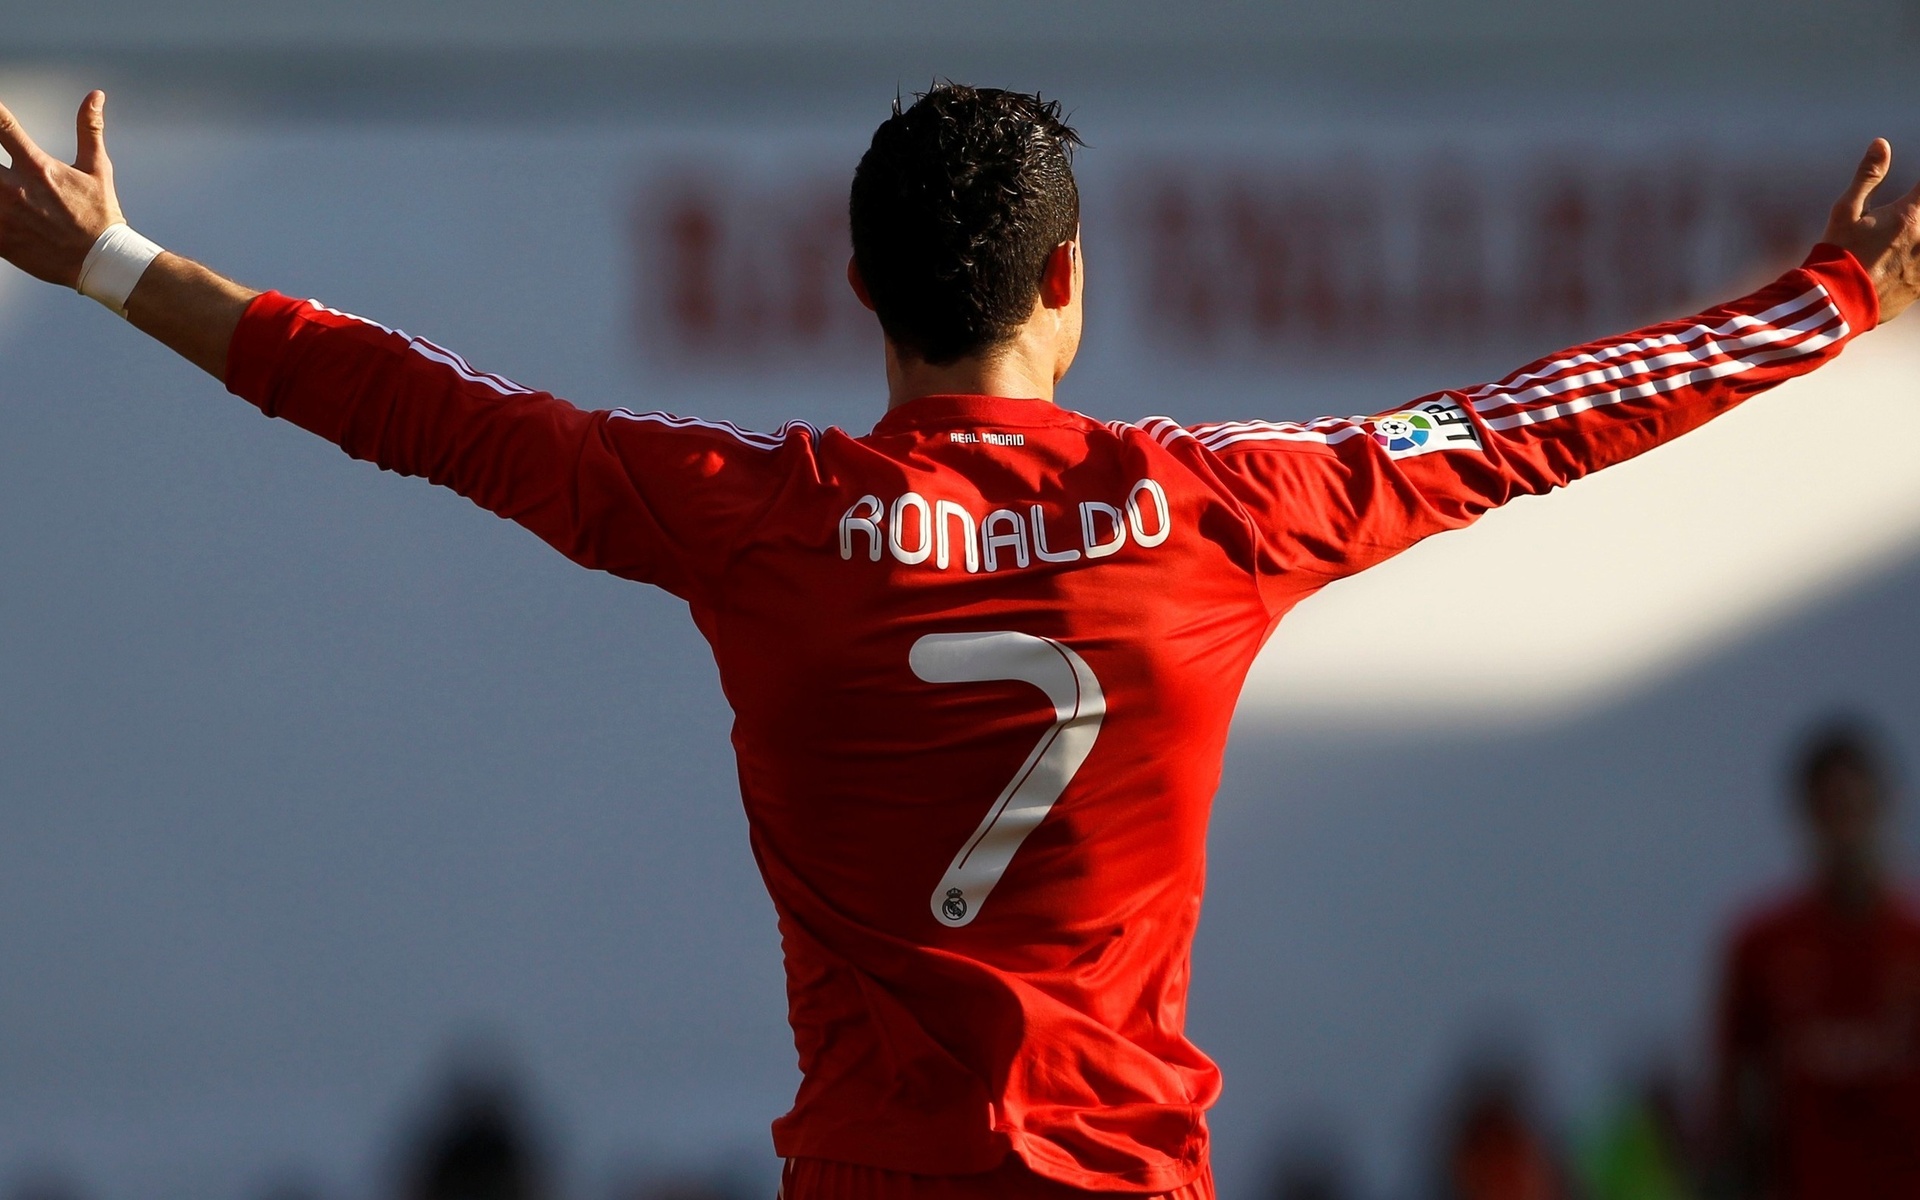 cristiano ronaldo, soccer, sports